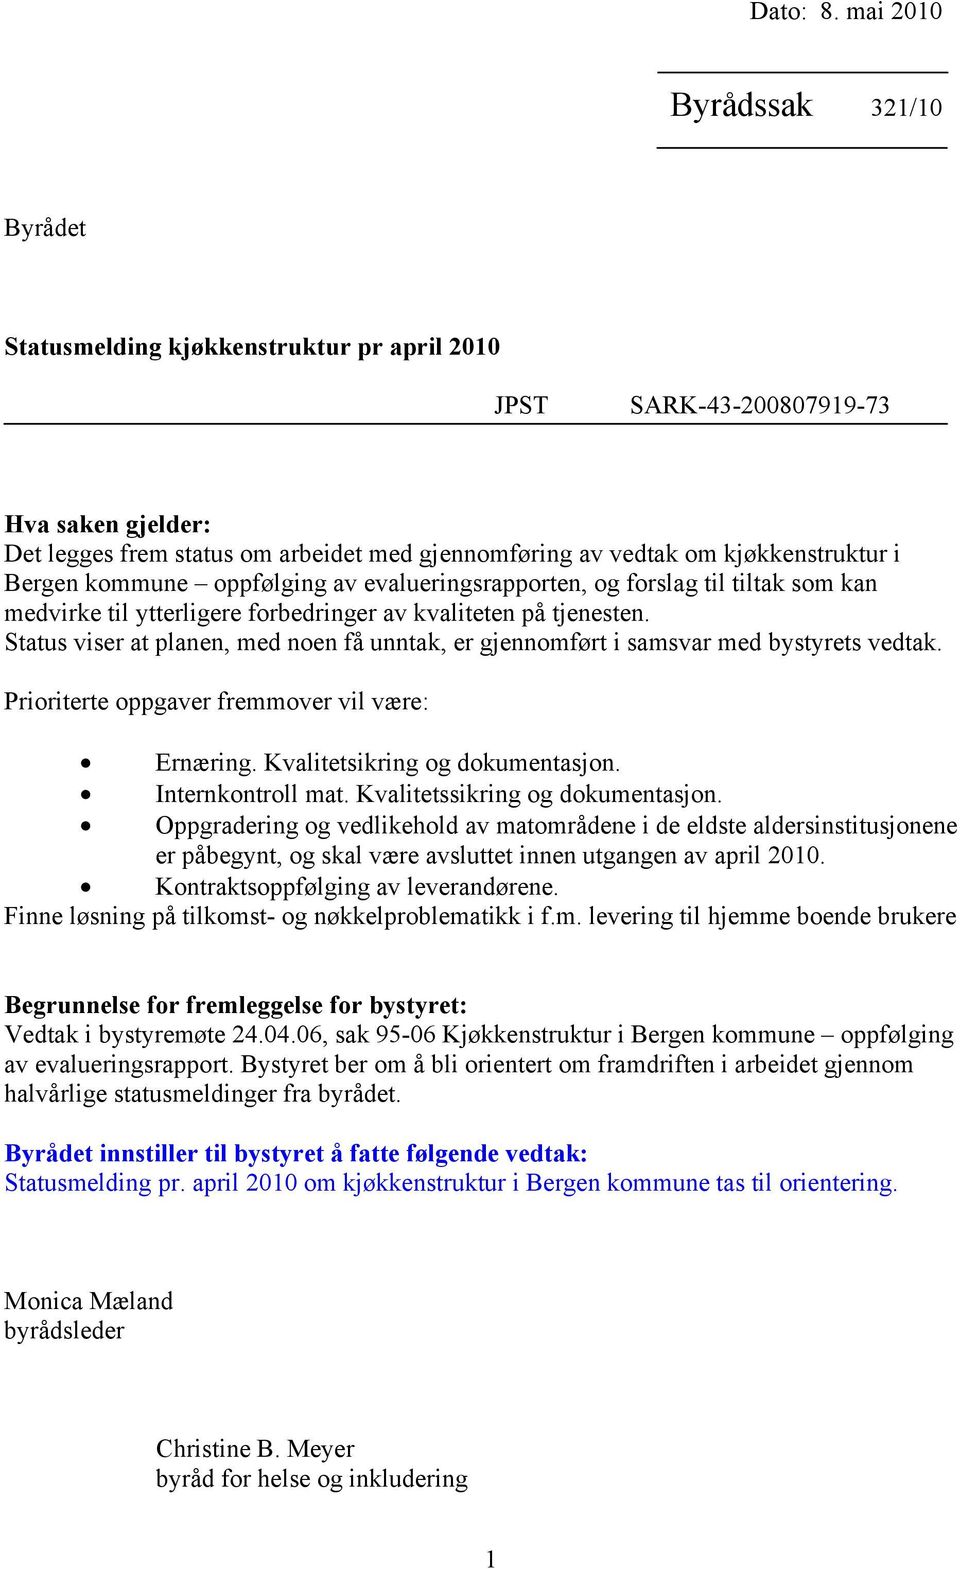 kjøkkenstruktur i Bergen kommune oppfølging av evalueringsrapporten, og forslag til tiltak som kan medvirke til ytterligere forbedringer av kvaliteten på tjenesten.